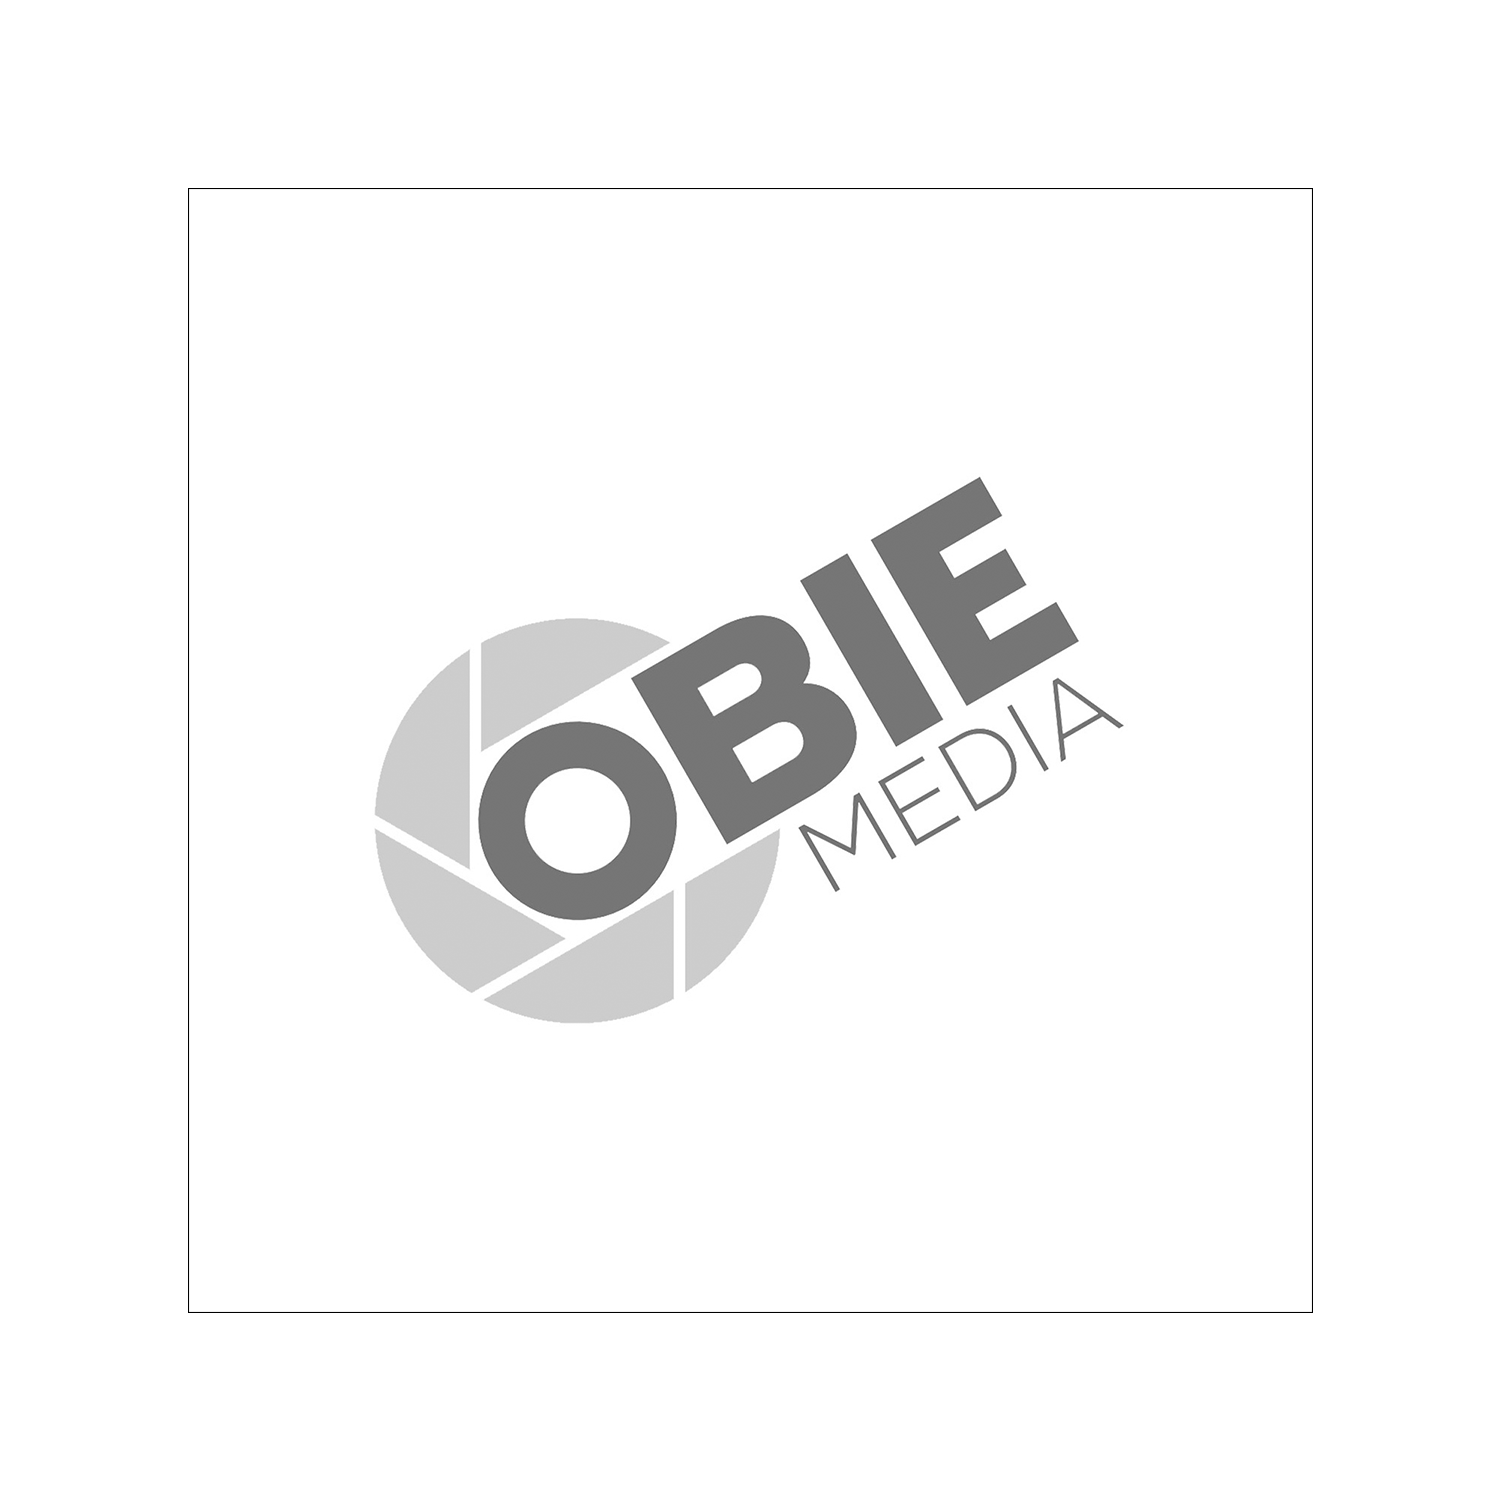 Obie Media